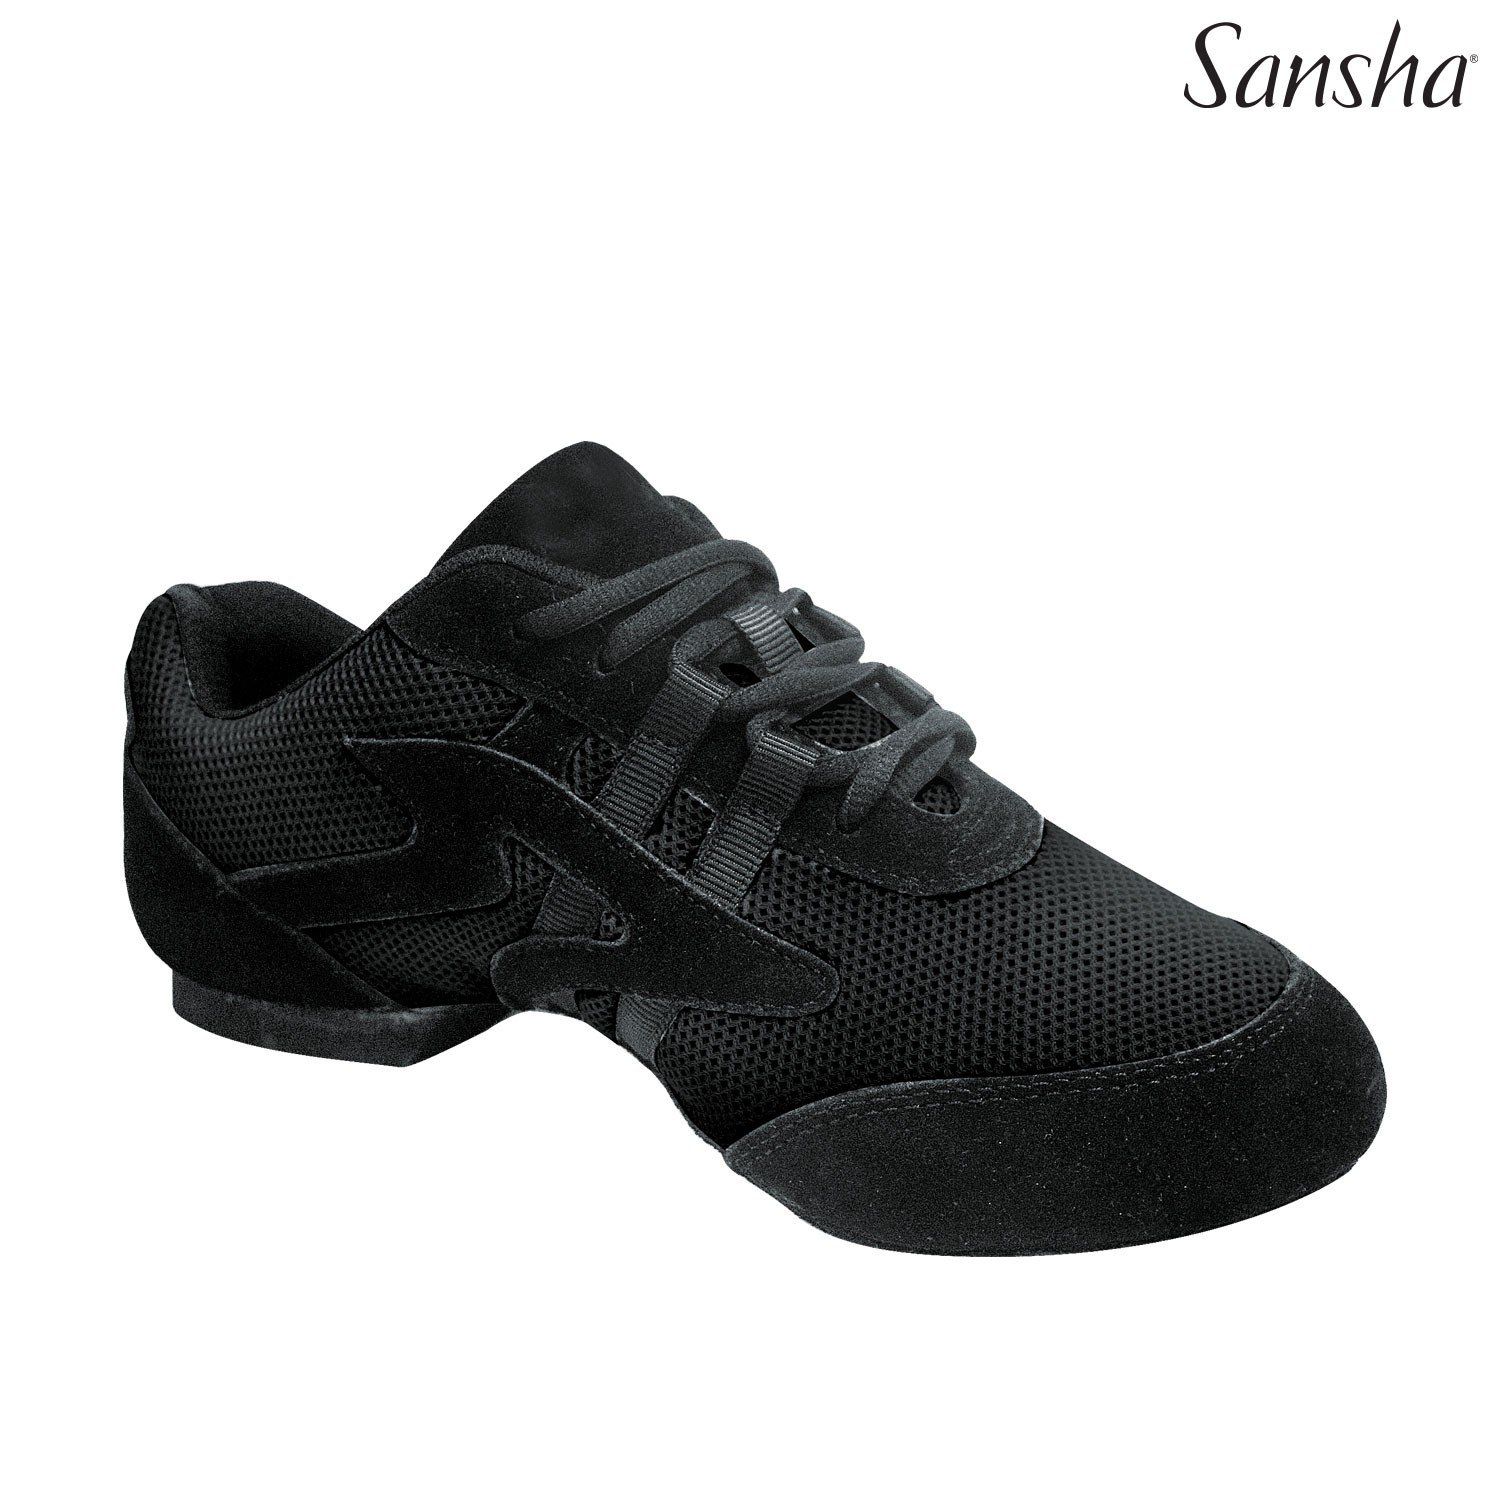 Sansha — Salsette — Hip Hop Shoes — Hummelstown, PA — The Dancer's Pointe